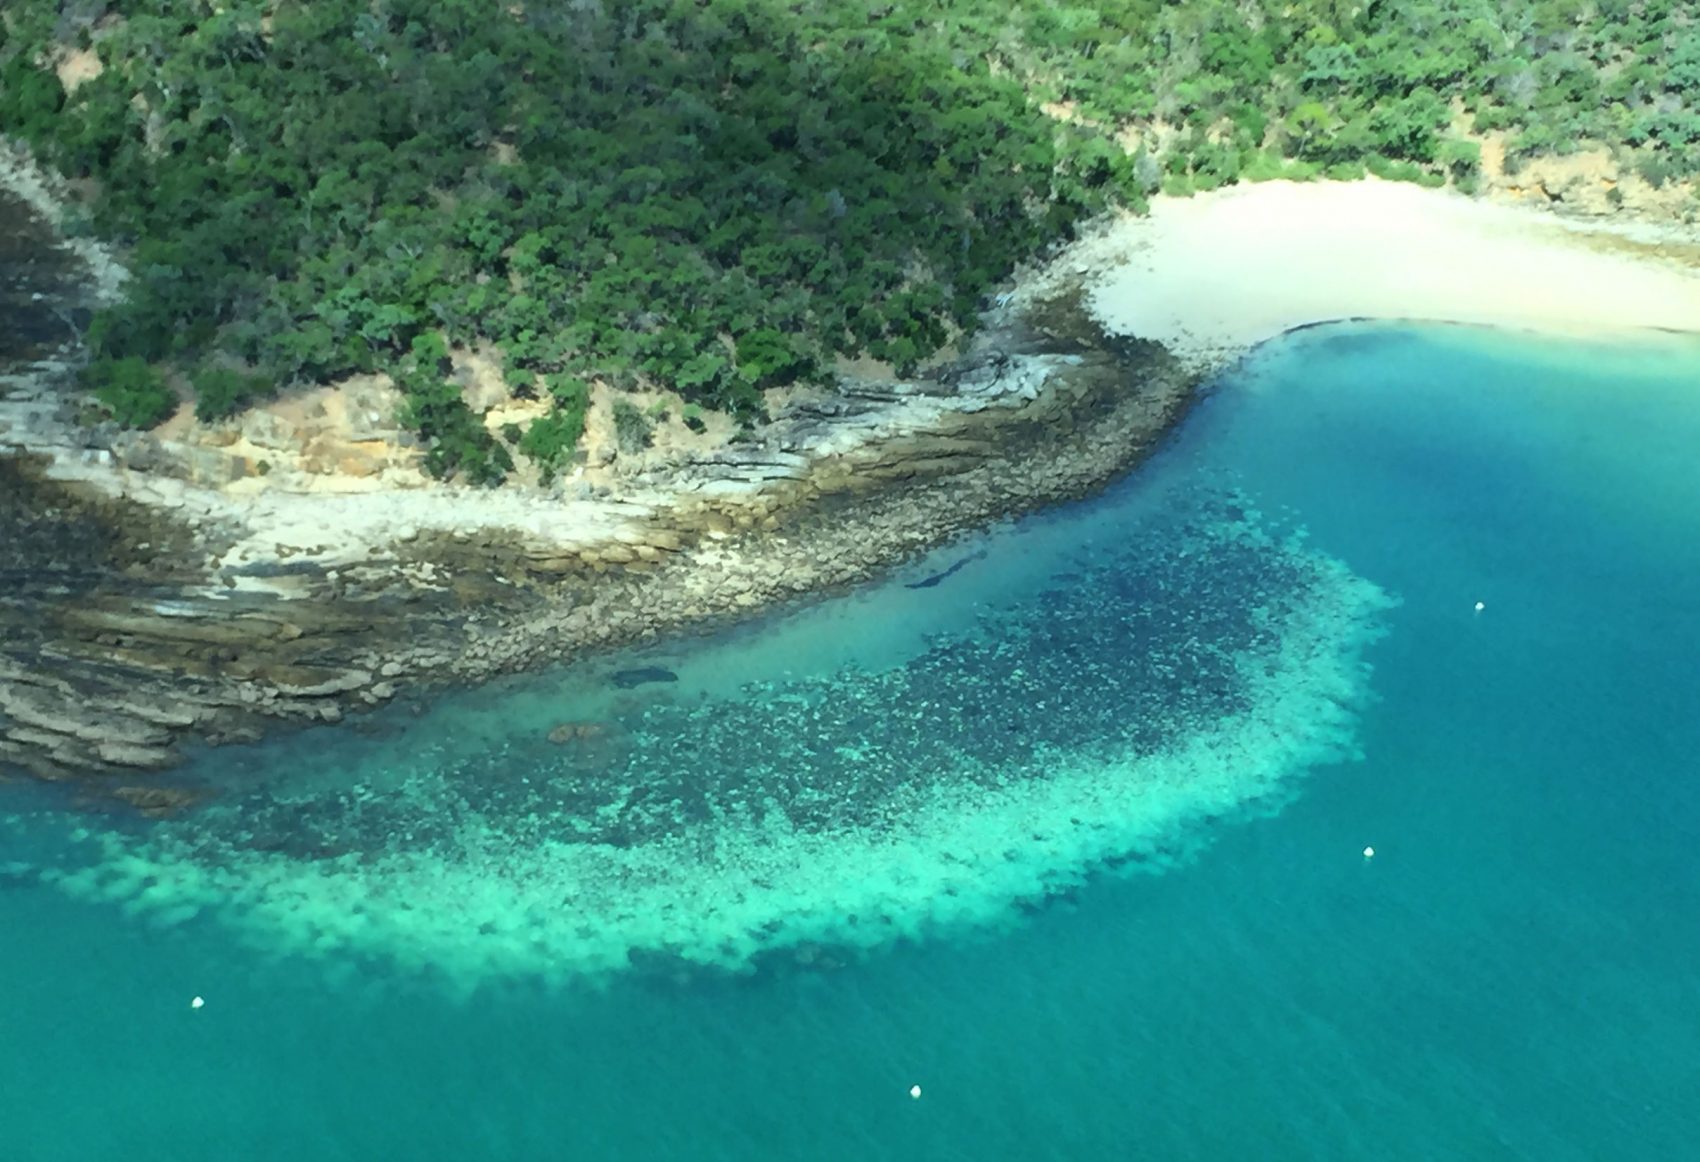 Vista aérea do branqueamento em massa de corais da Grande Barreira australiana, causada por ondas de calor marítimas: terceiro evento em cinco anos revela ameaça aos quase três mil recifes (Foto: James Cook University Australia/AFP)